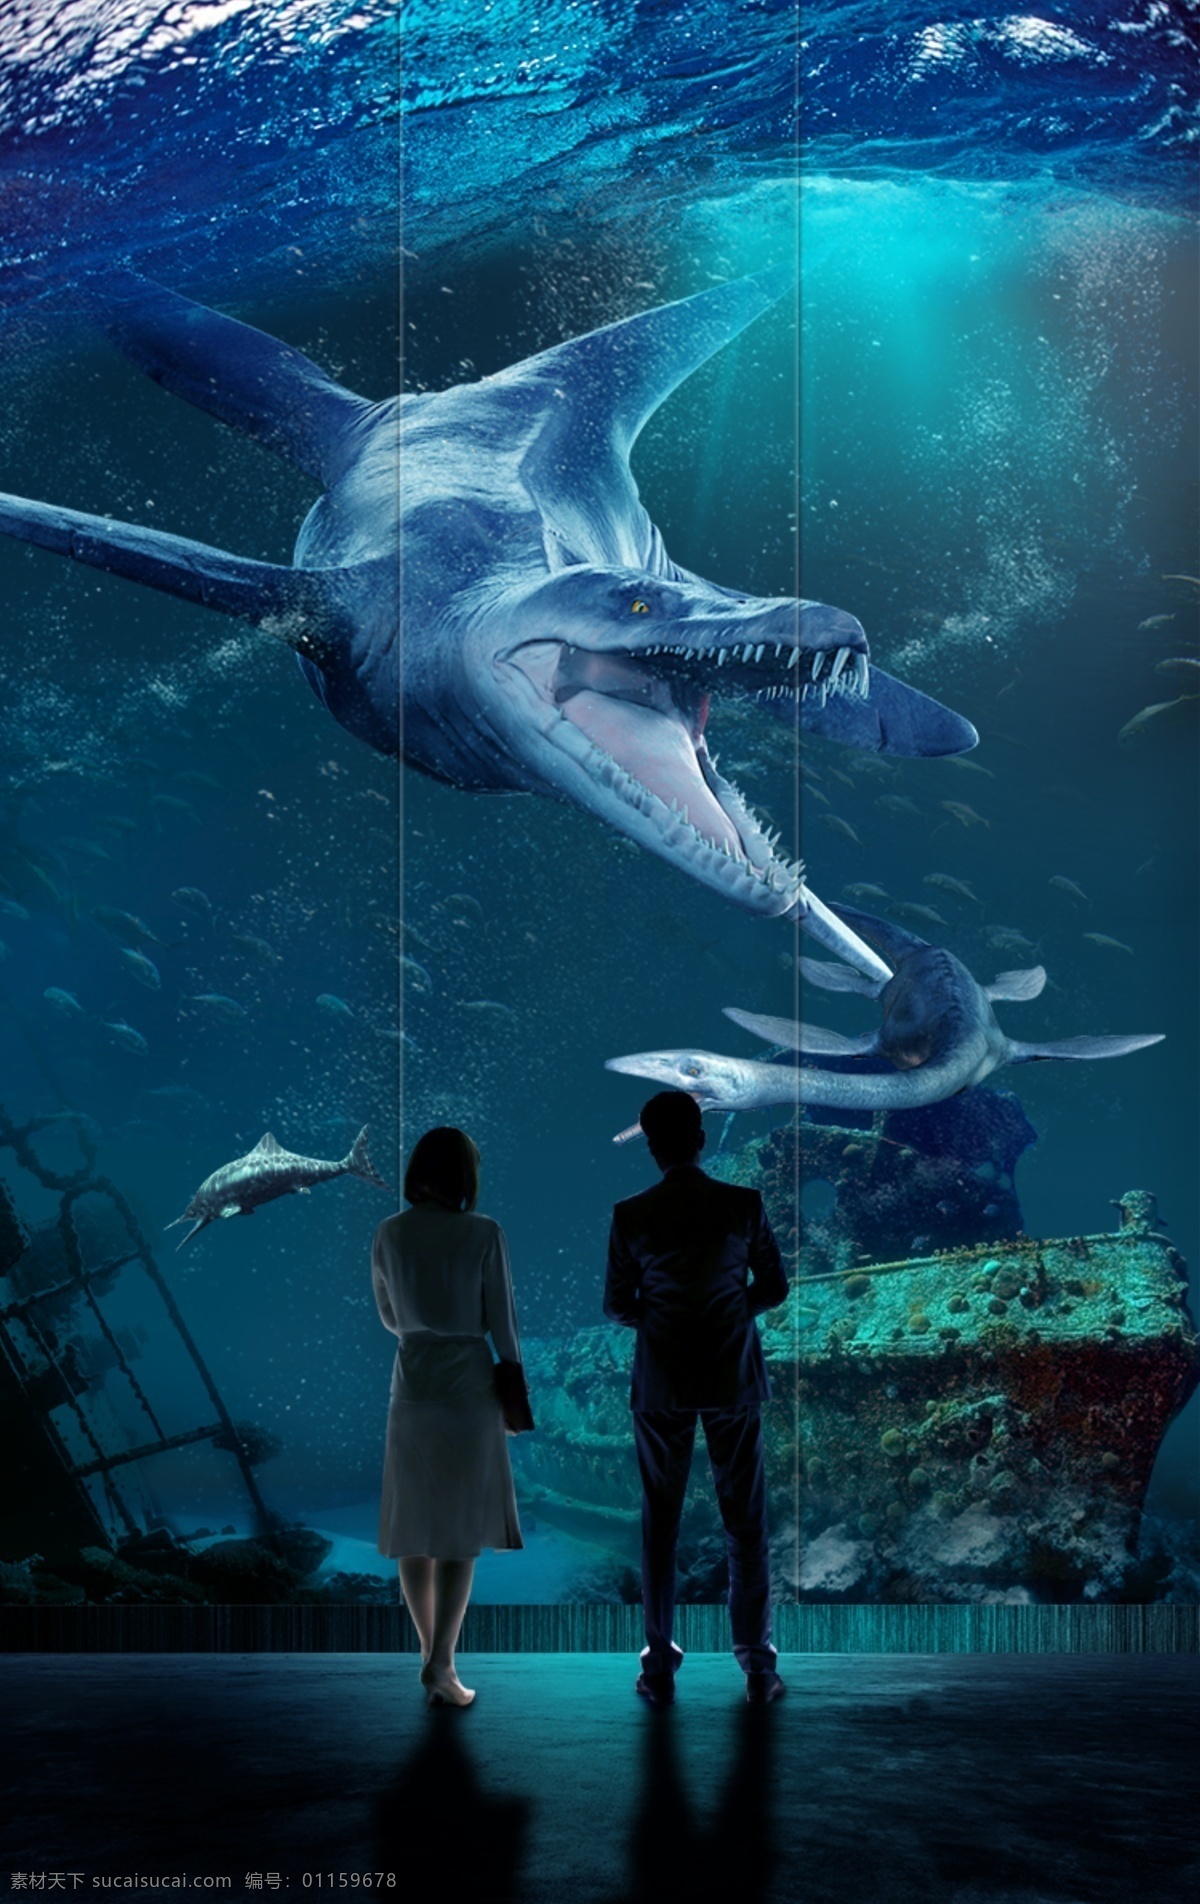 侏罗纪 世界 海报 侏罗纪世界 海底世界 沧龙 蓝色海底 黑色